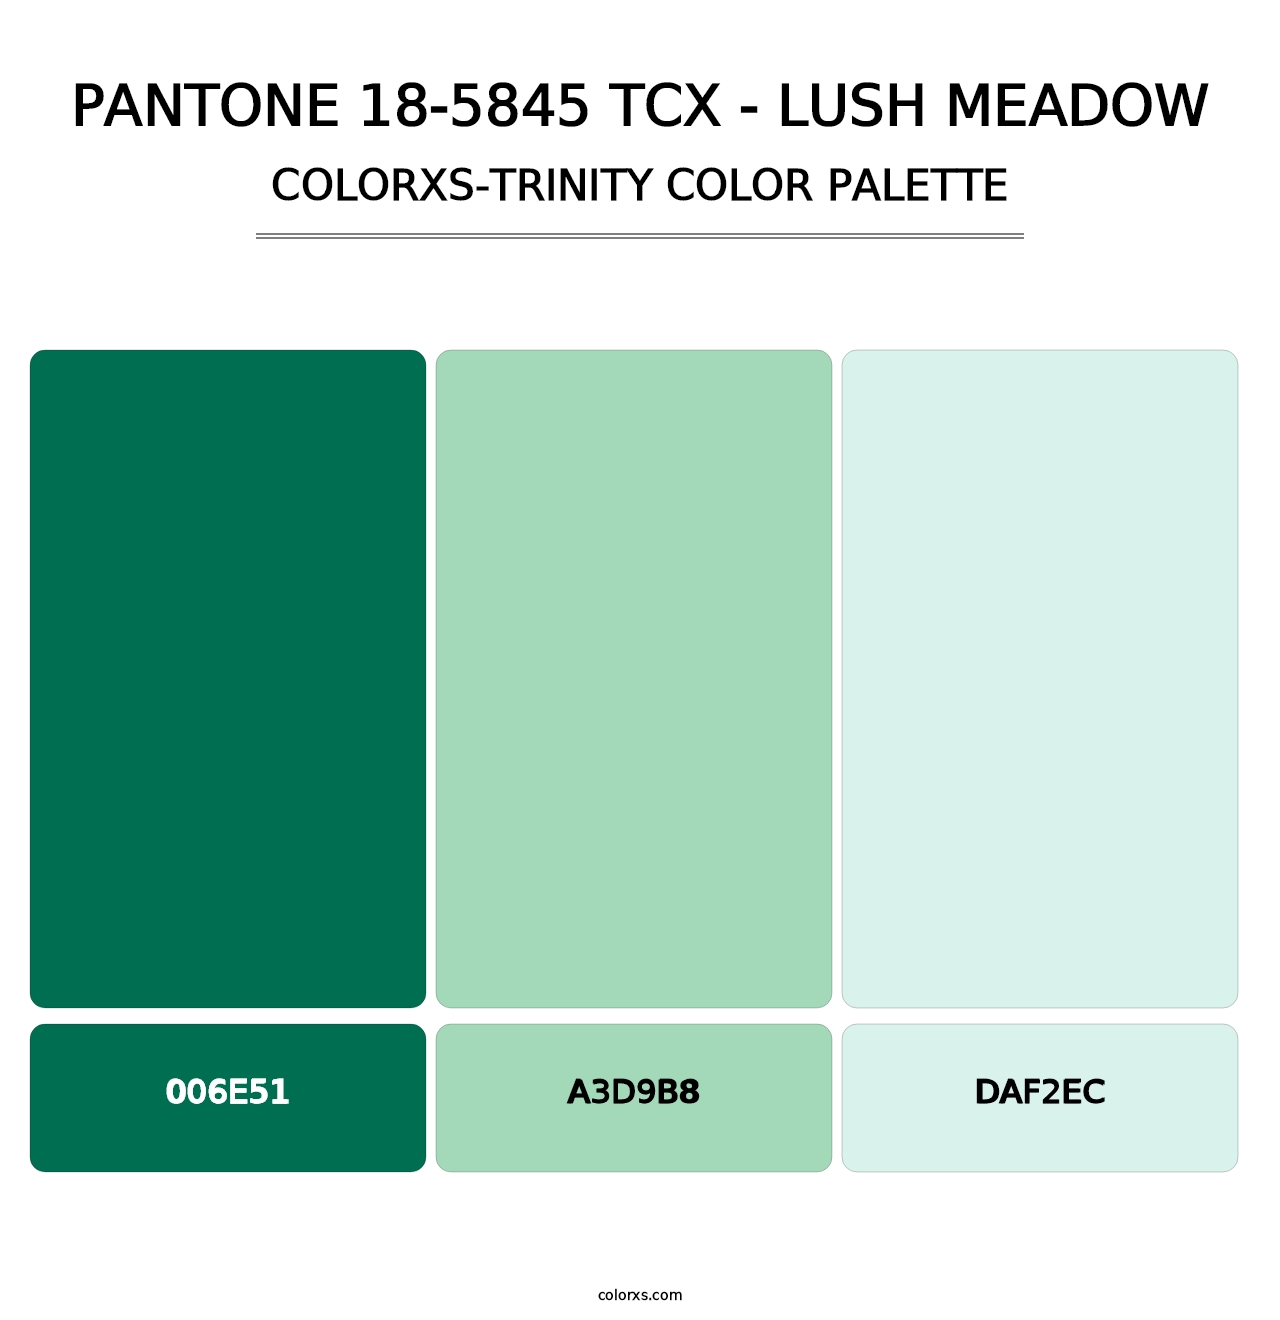 PANTONE 18-5845 TCX - Lush Meadow - Colorxs Trinity Palette